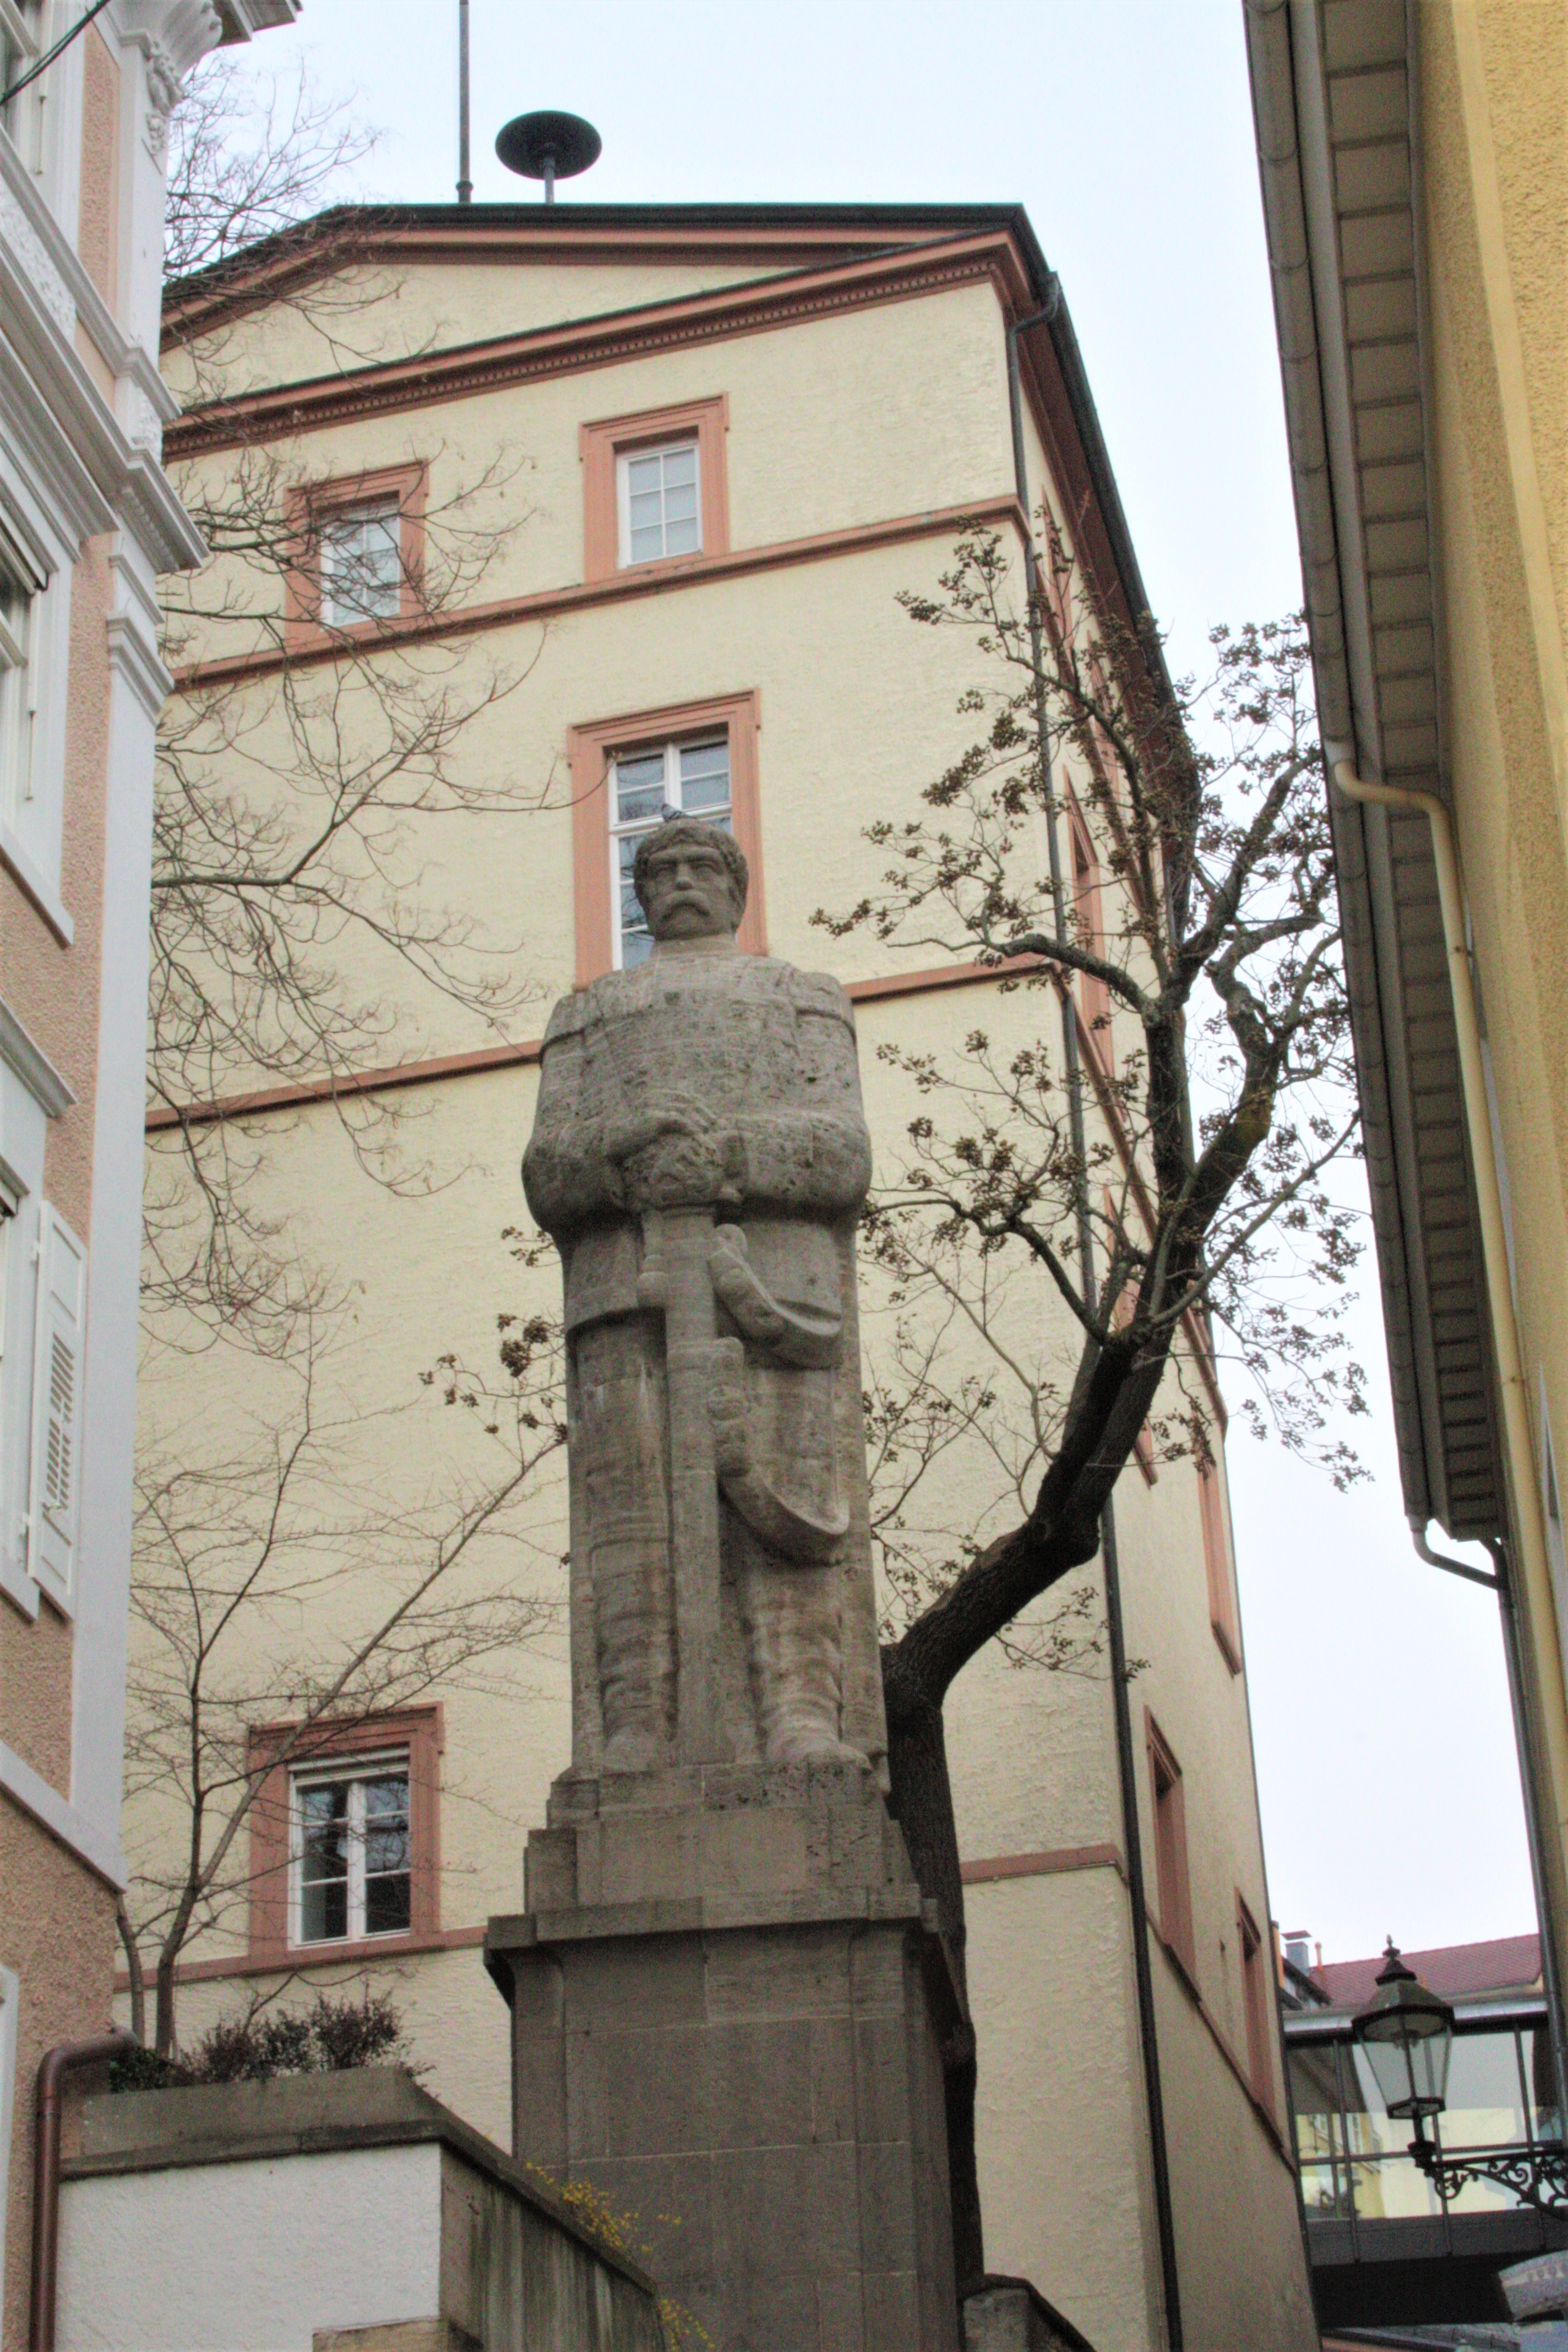 Otto von Bismarck Statue, Baden-Baden.
